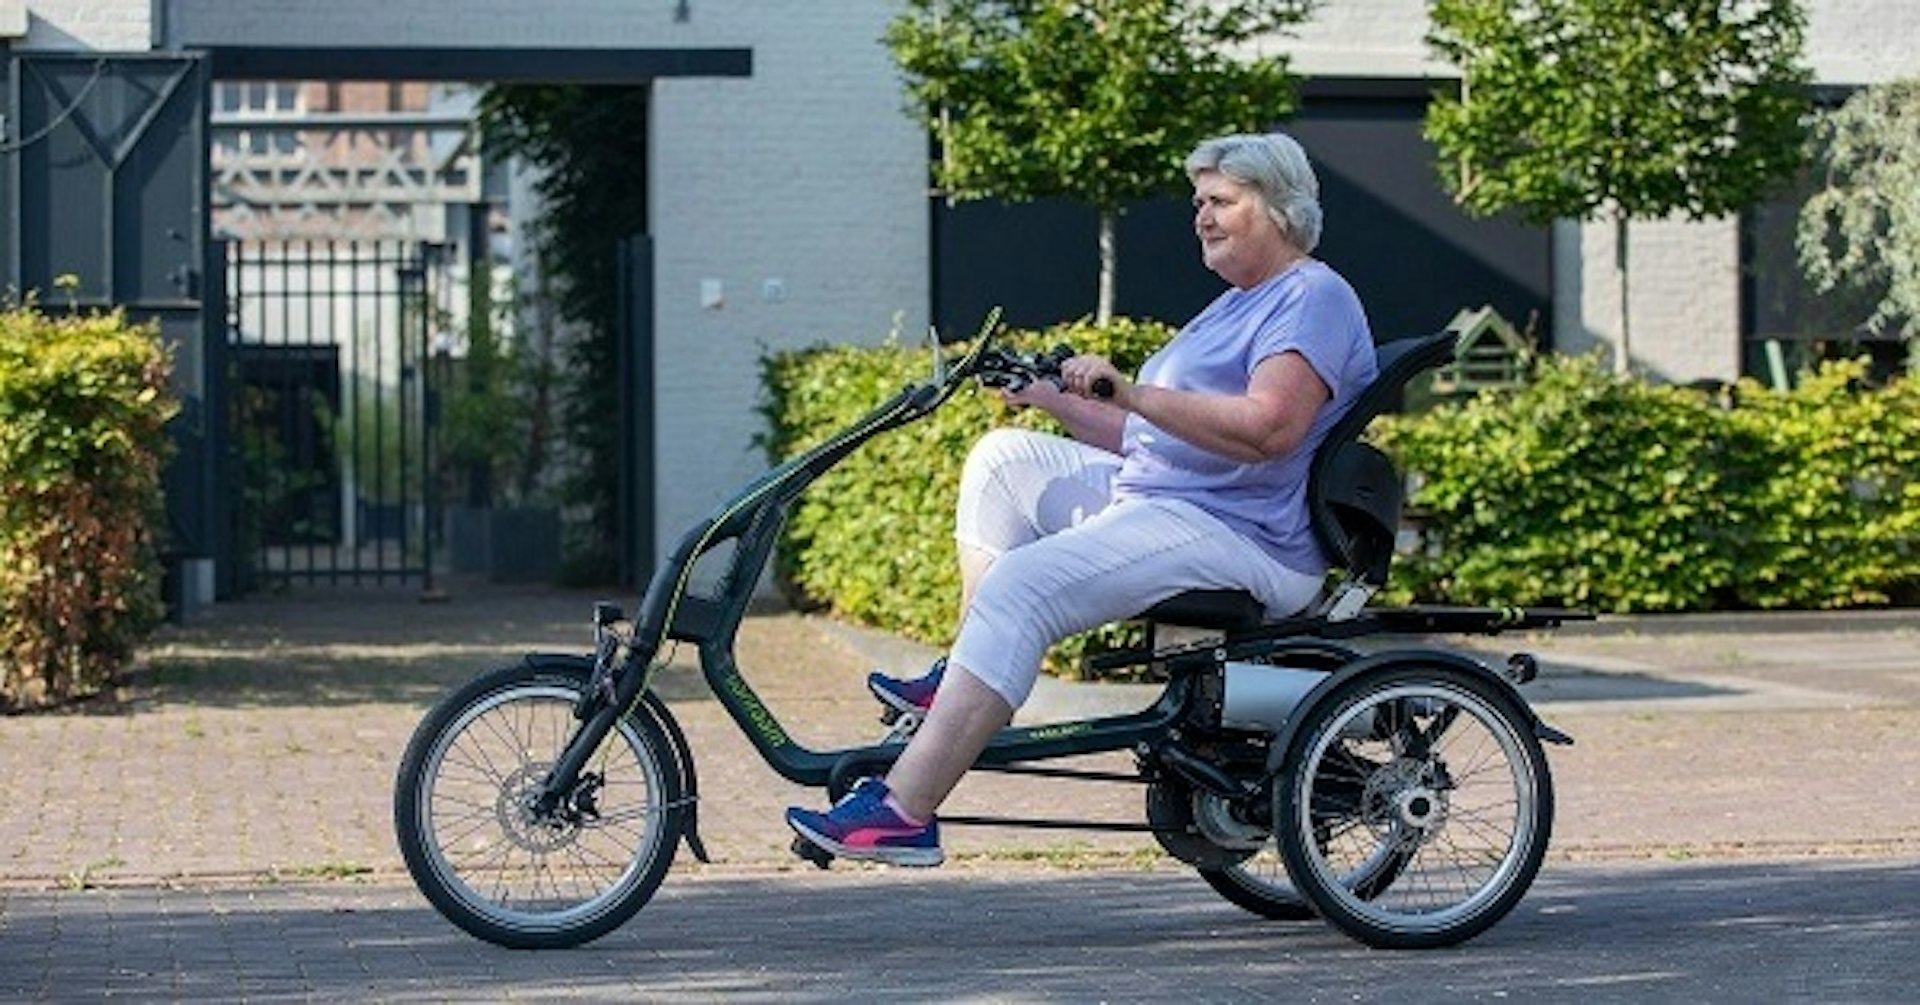 Verbesserung der Mobilitat fur senioren